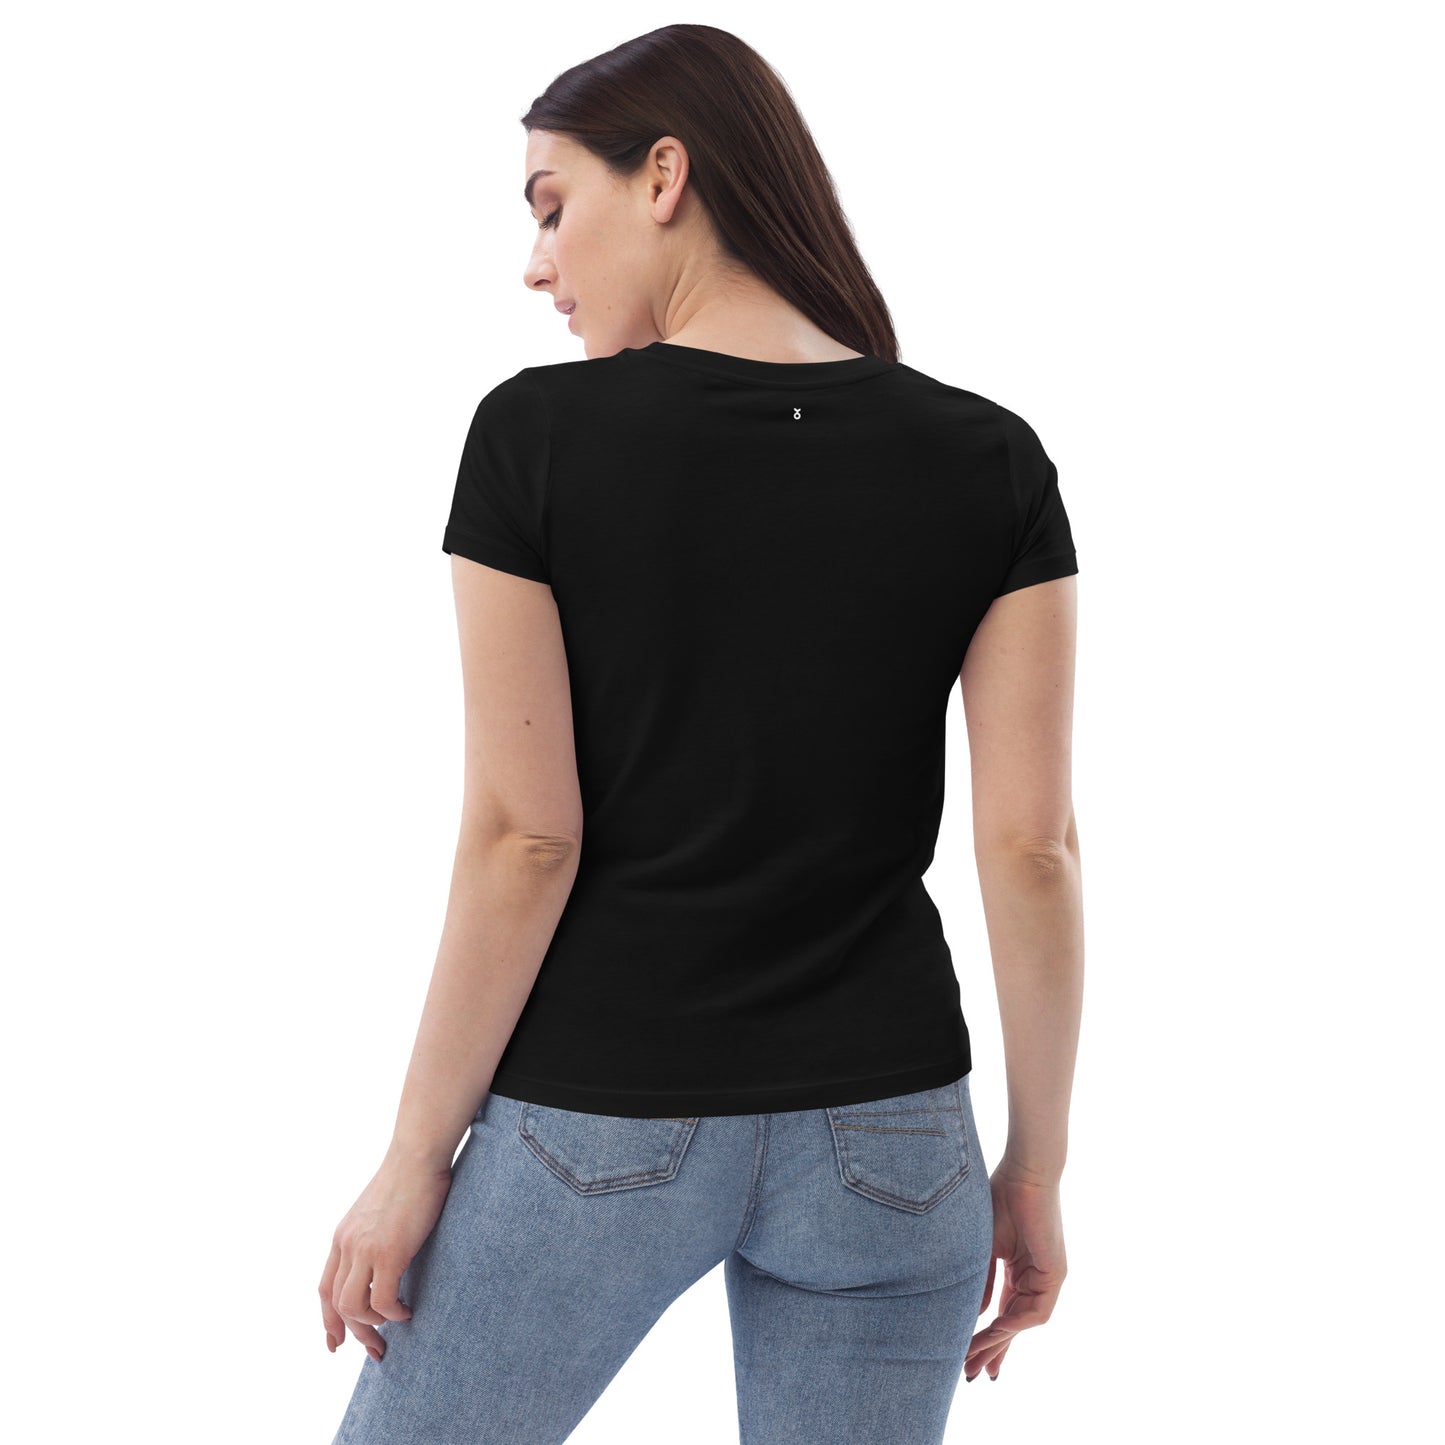 T-shirt nera ricamata con uccelli primaverili in stile Bauhaus in cotone organico - Donna